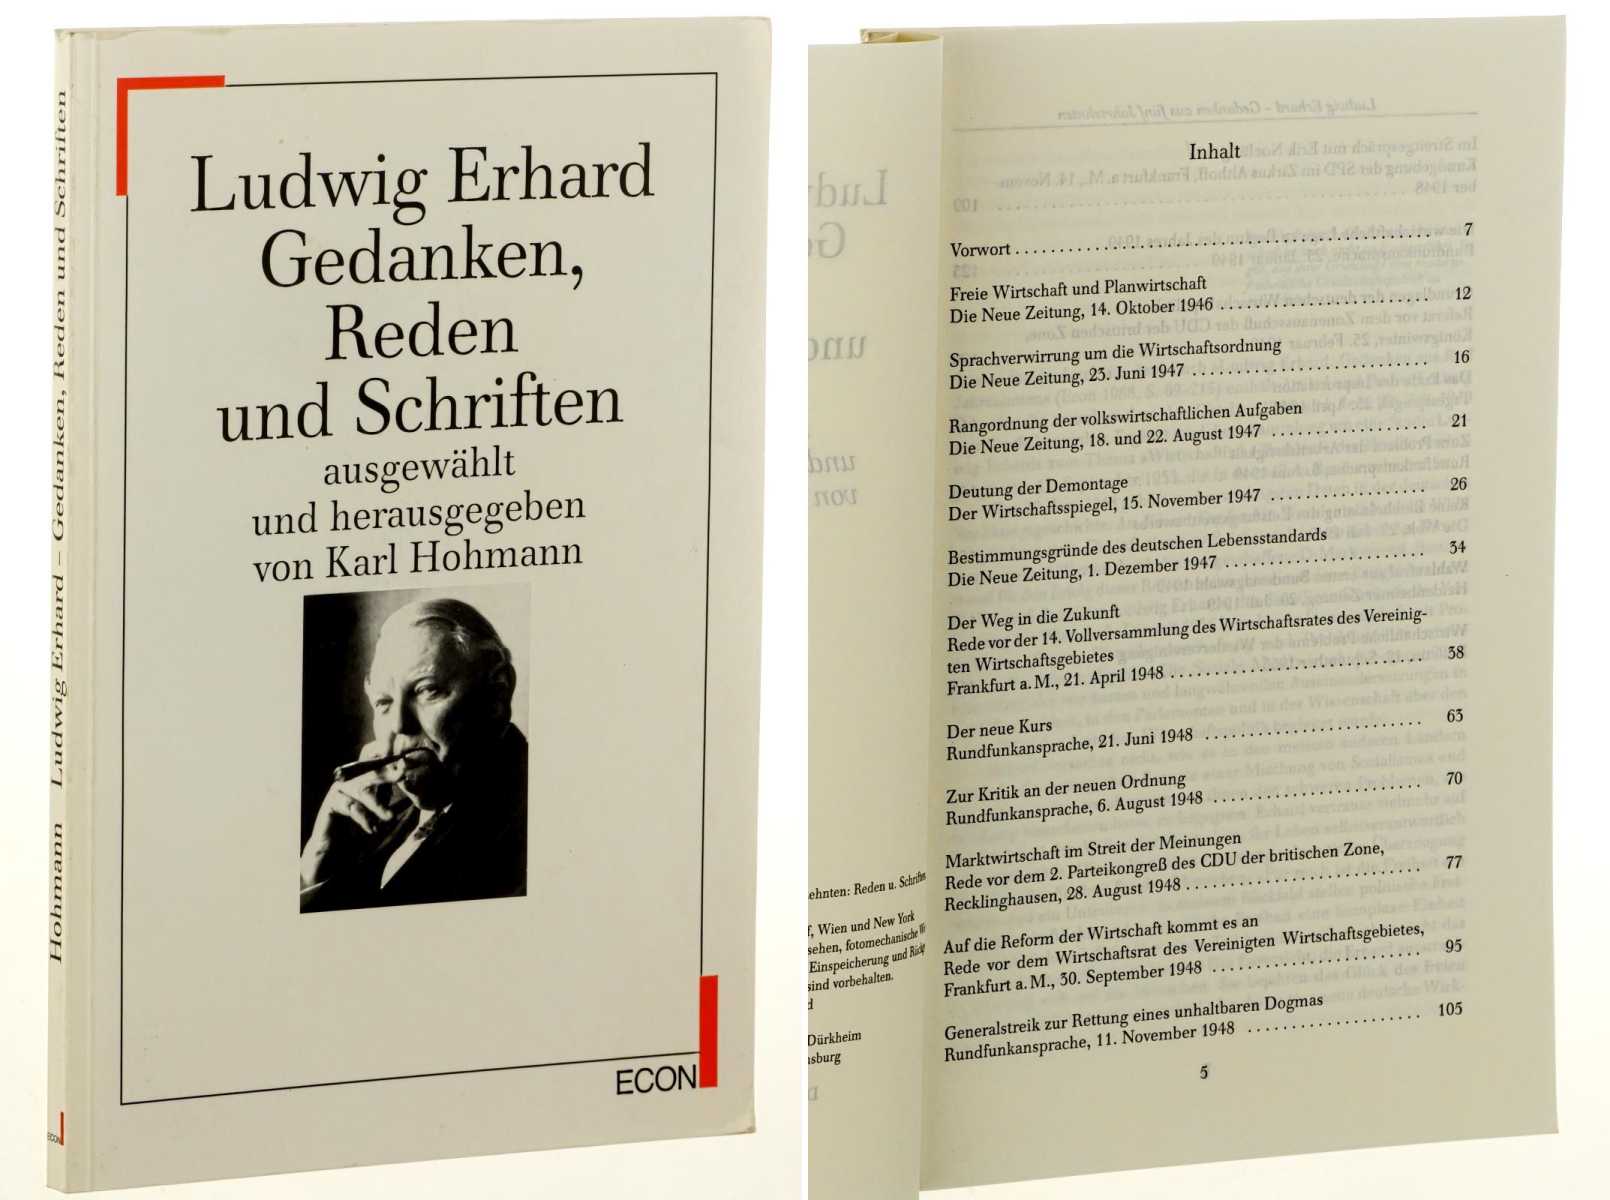 Erhard, Ludwig:  Gedanken, Reden und Schriften. Ausgewählt und hrsg. von Karl Hohmann. 